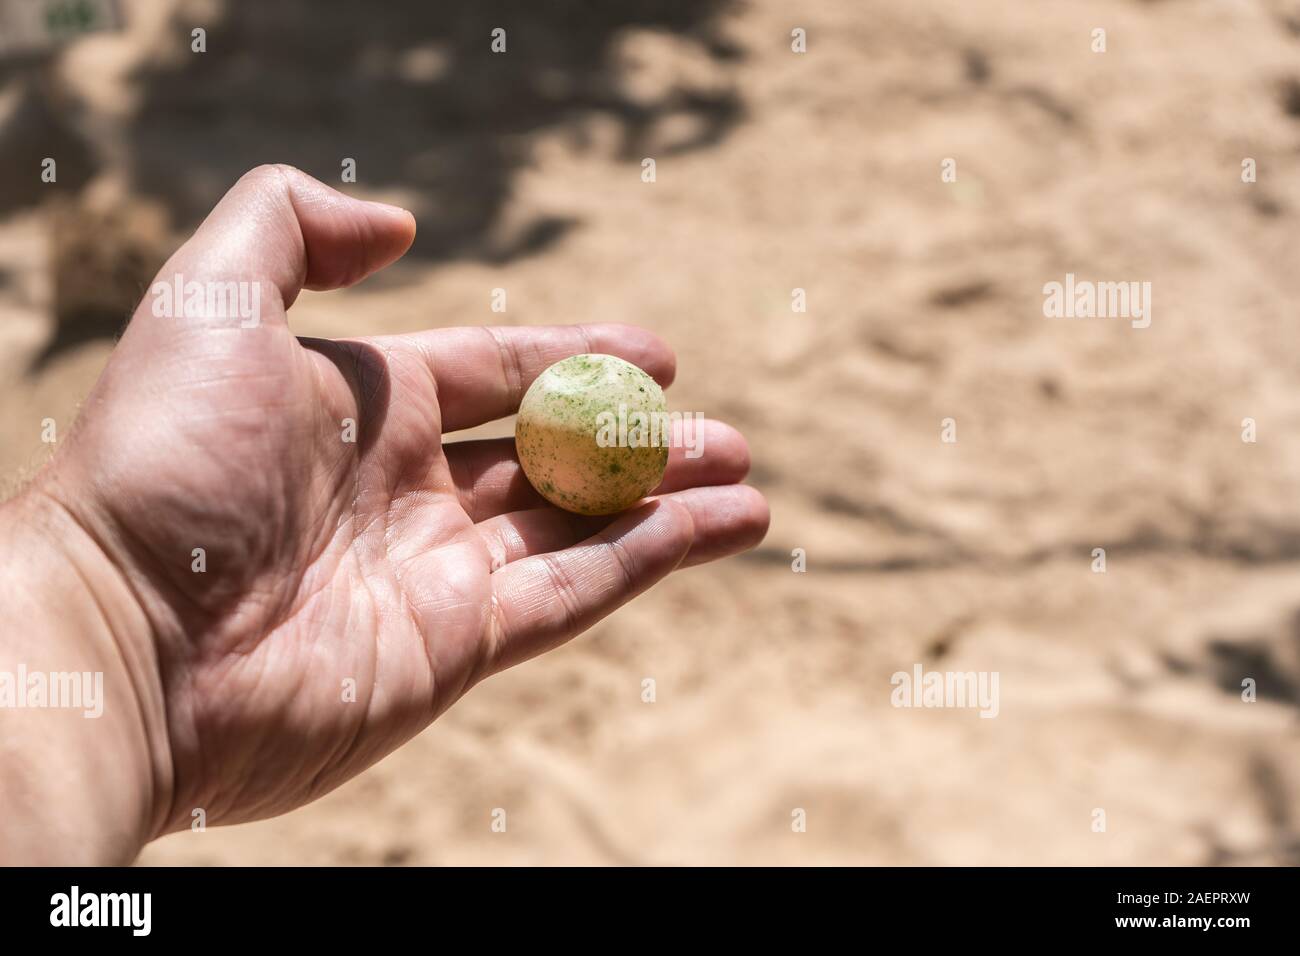 Un homme est titulaire d'un des œufs de tortue dans sa main. Côté masculin avec un close-up des oeufs de tortue. Banque D'Images